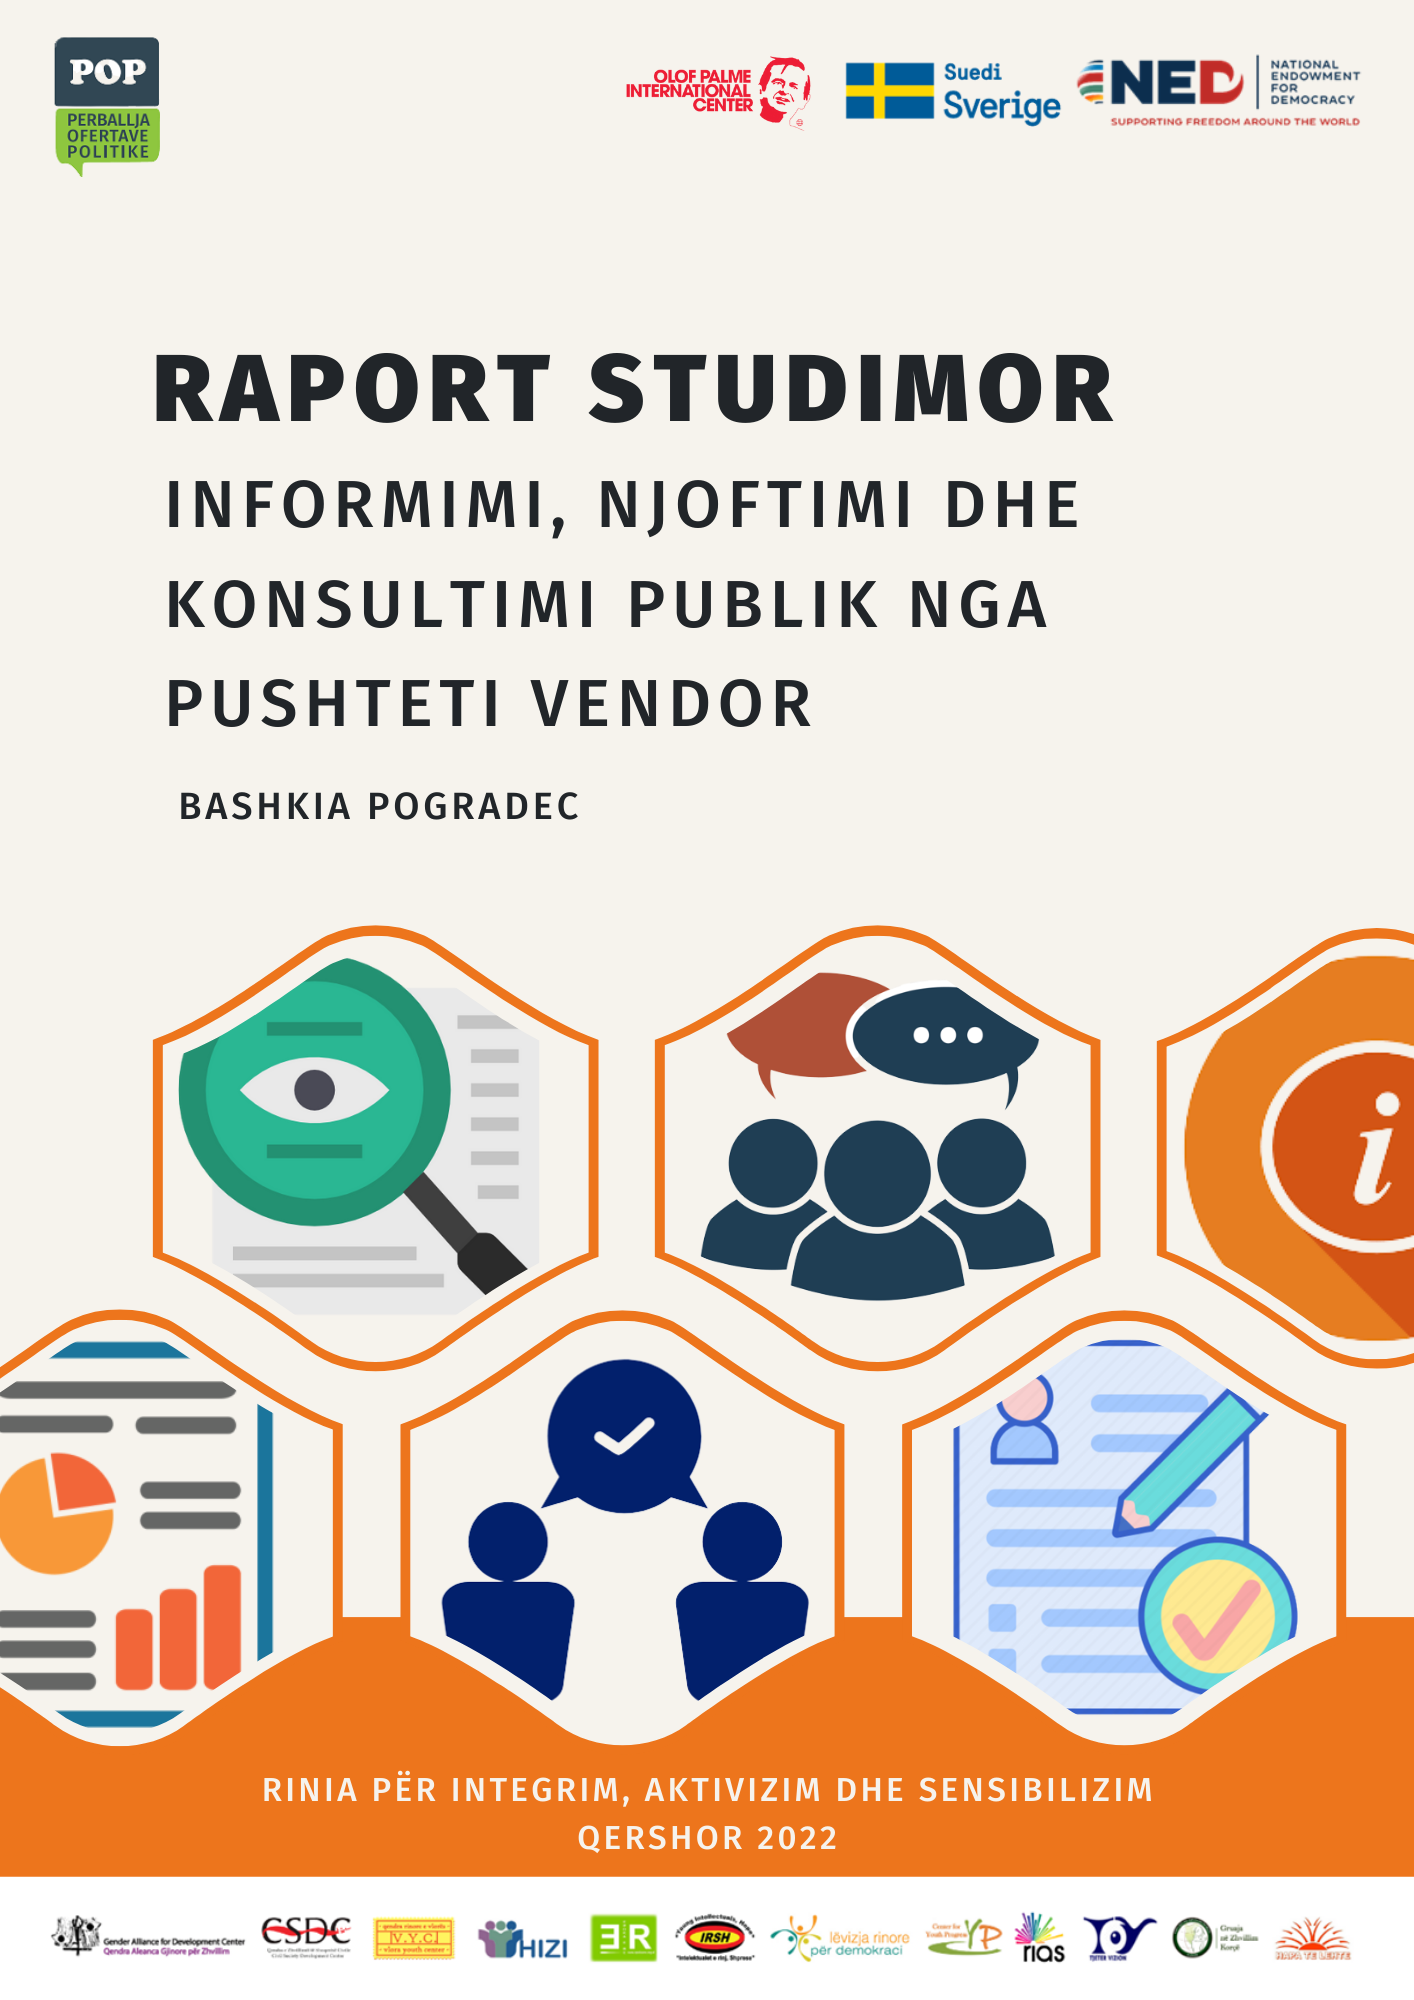 Raporti studimor “Informimi, Njoftimi dhe Konsultimi Publik” – Bashkia Pogradec